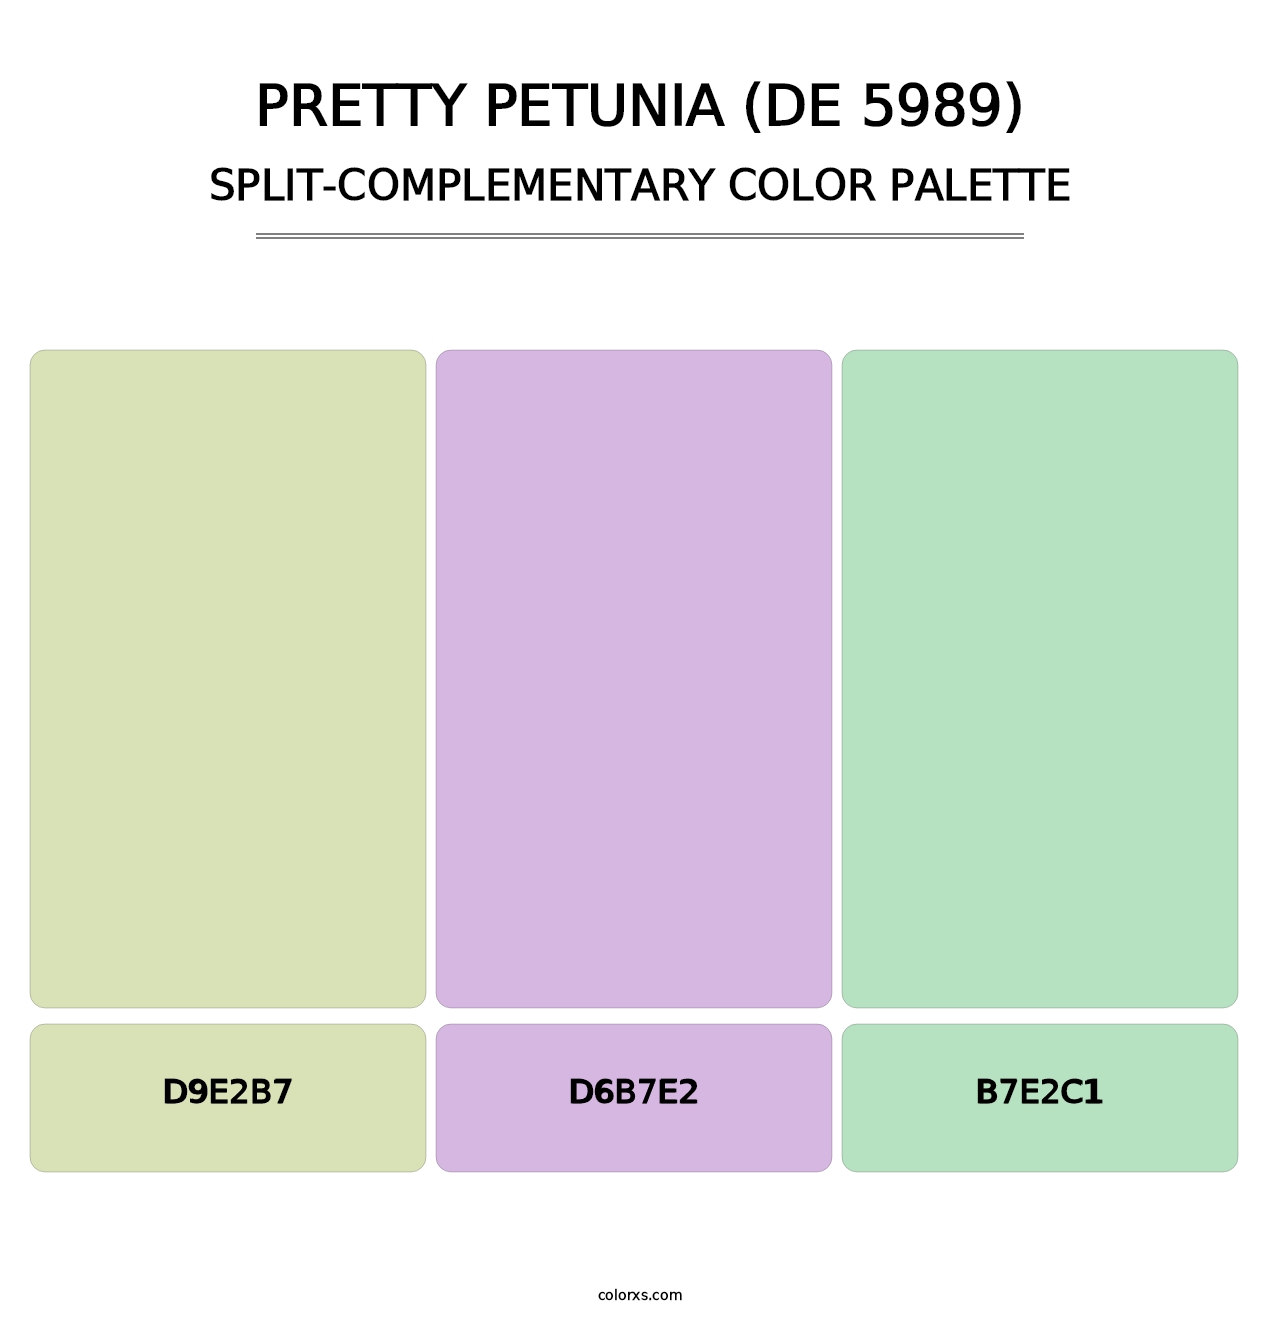 Pretty Petunia (DE 5989) - Split-Complementary Color Palette